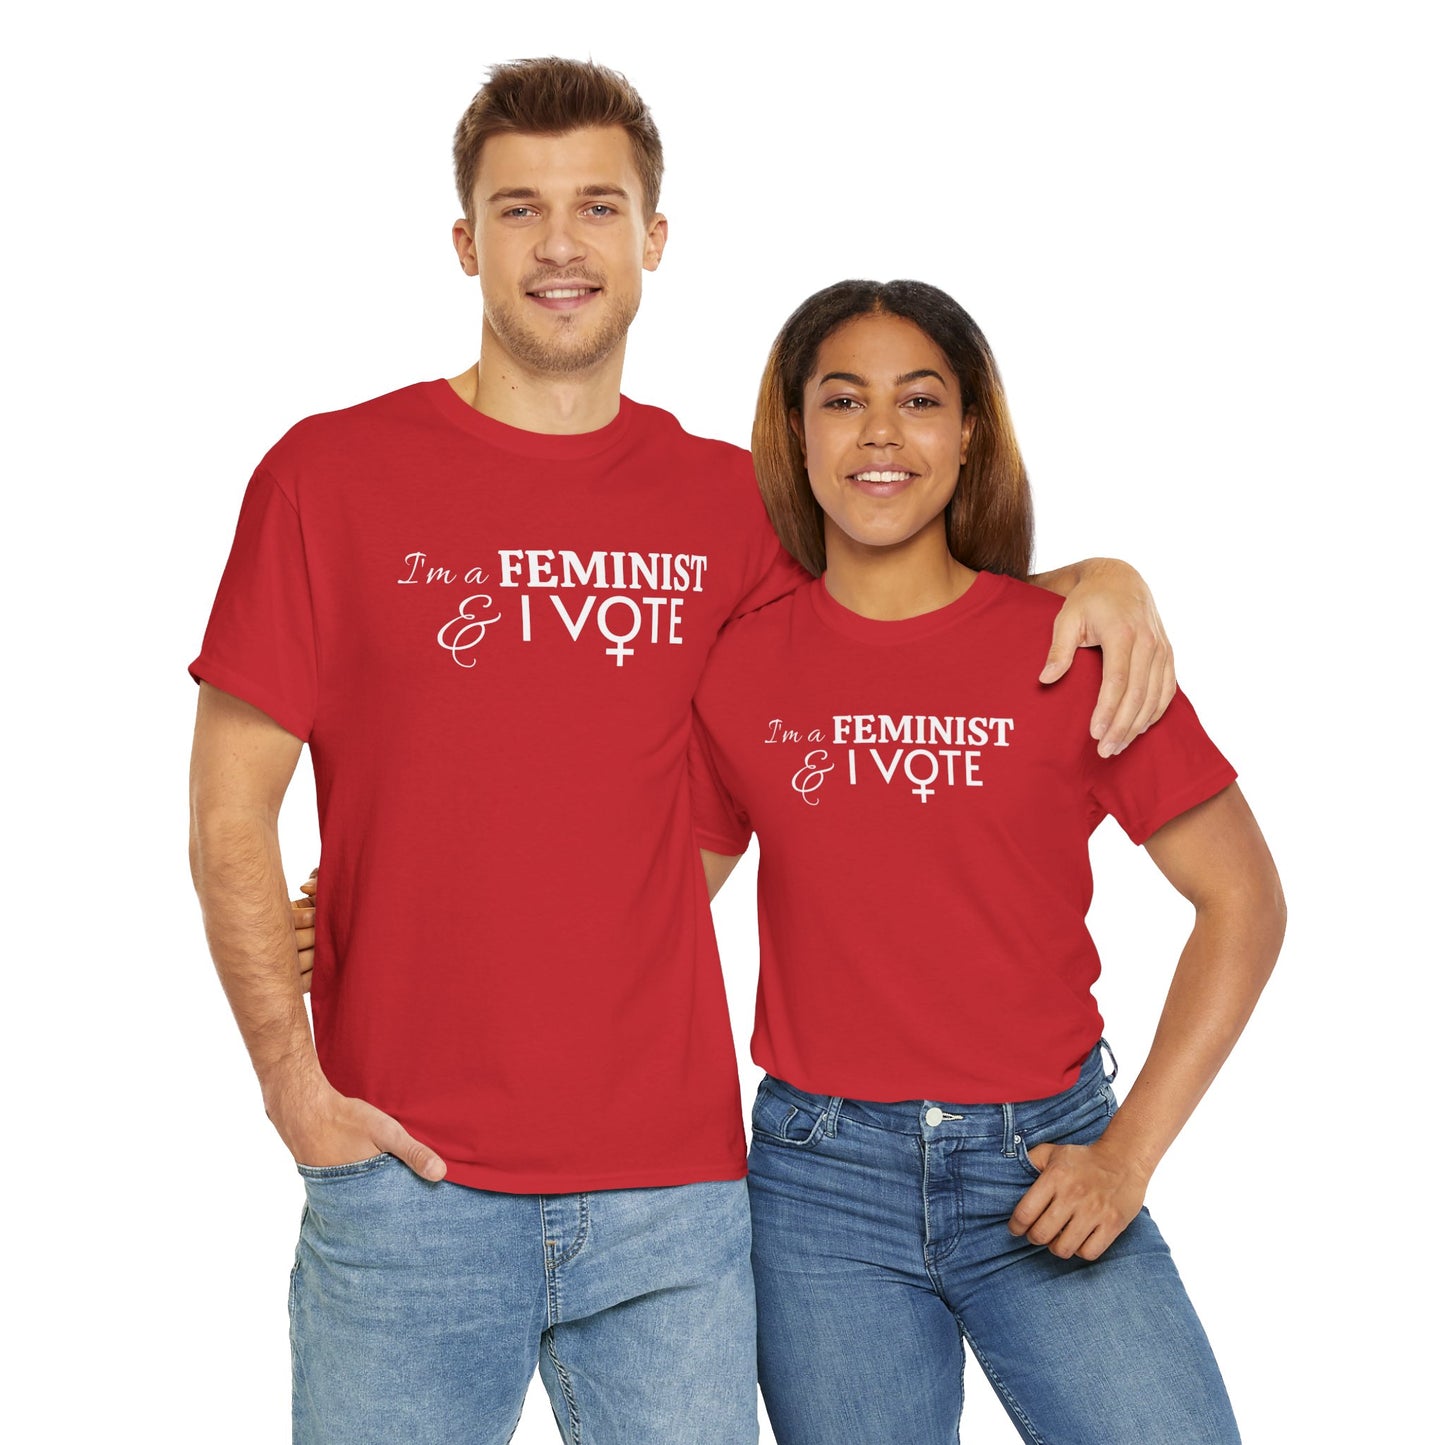 "I'm a FEMINIST & I vote" t-shirt